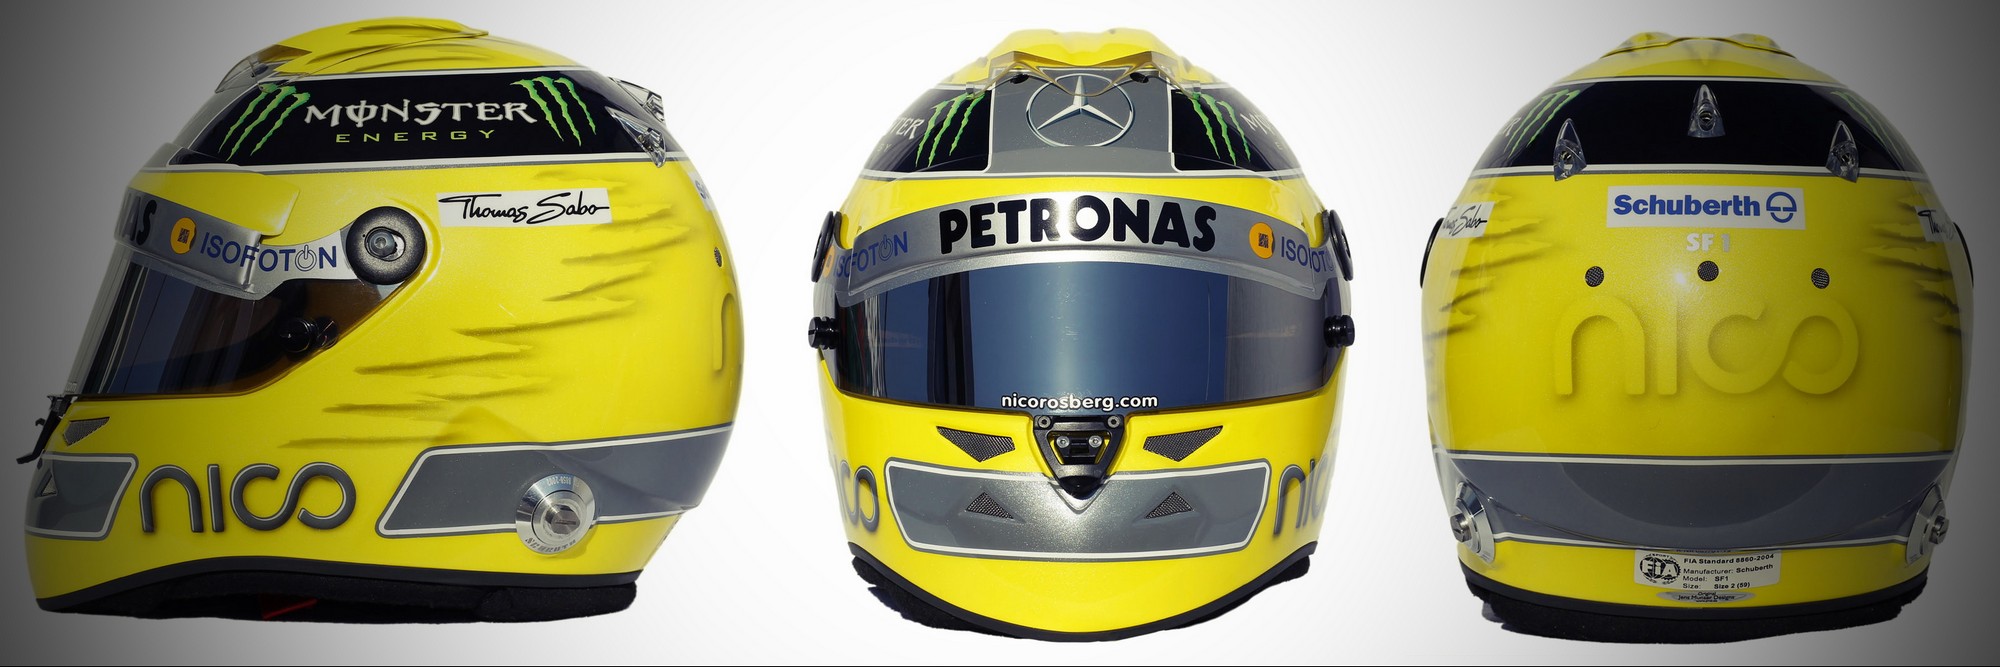 Шлем Нико Росберга на сезон 2012 года | 2012 helmet of Nico Rosberg